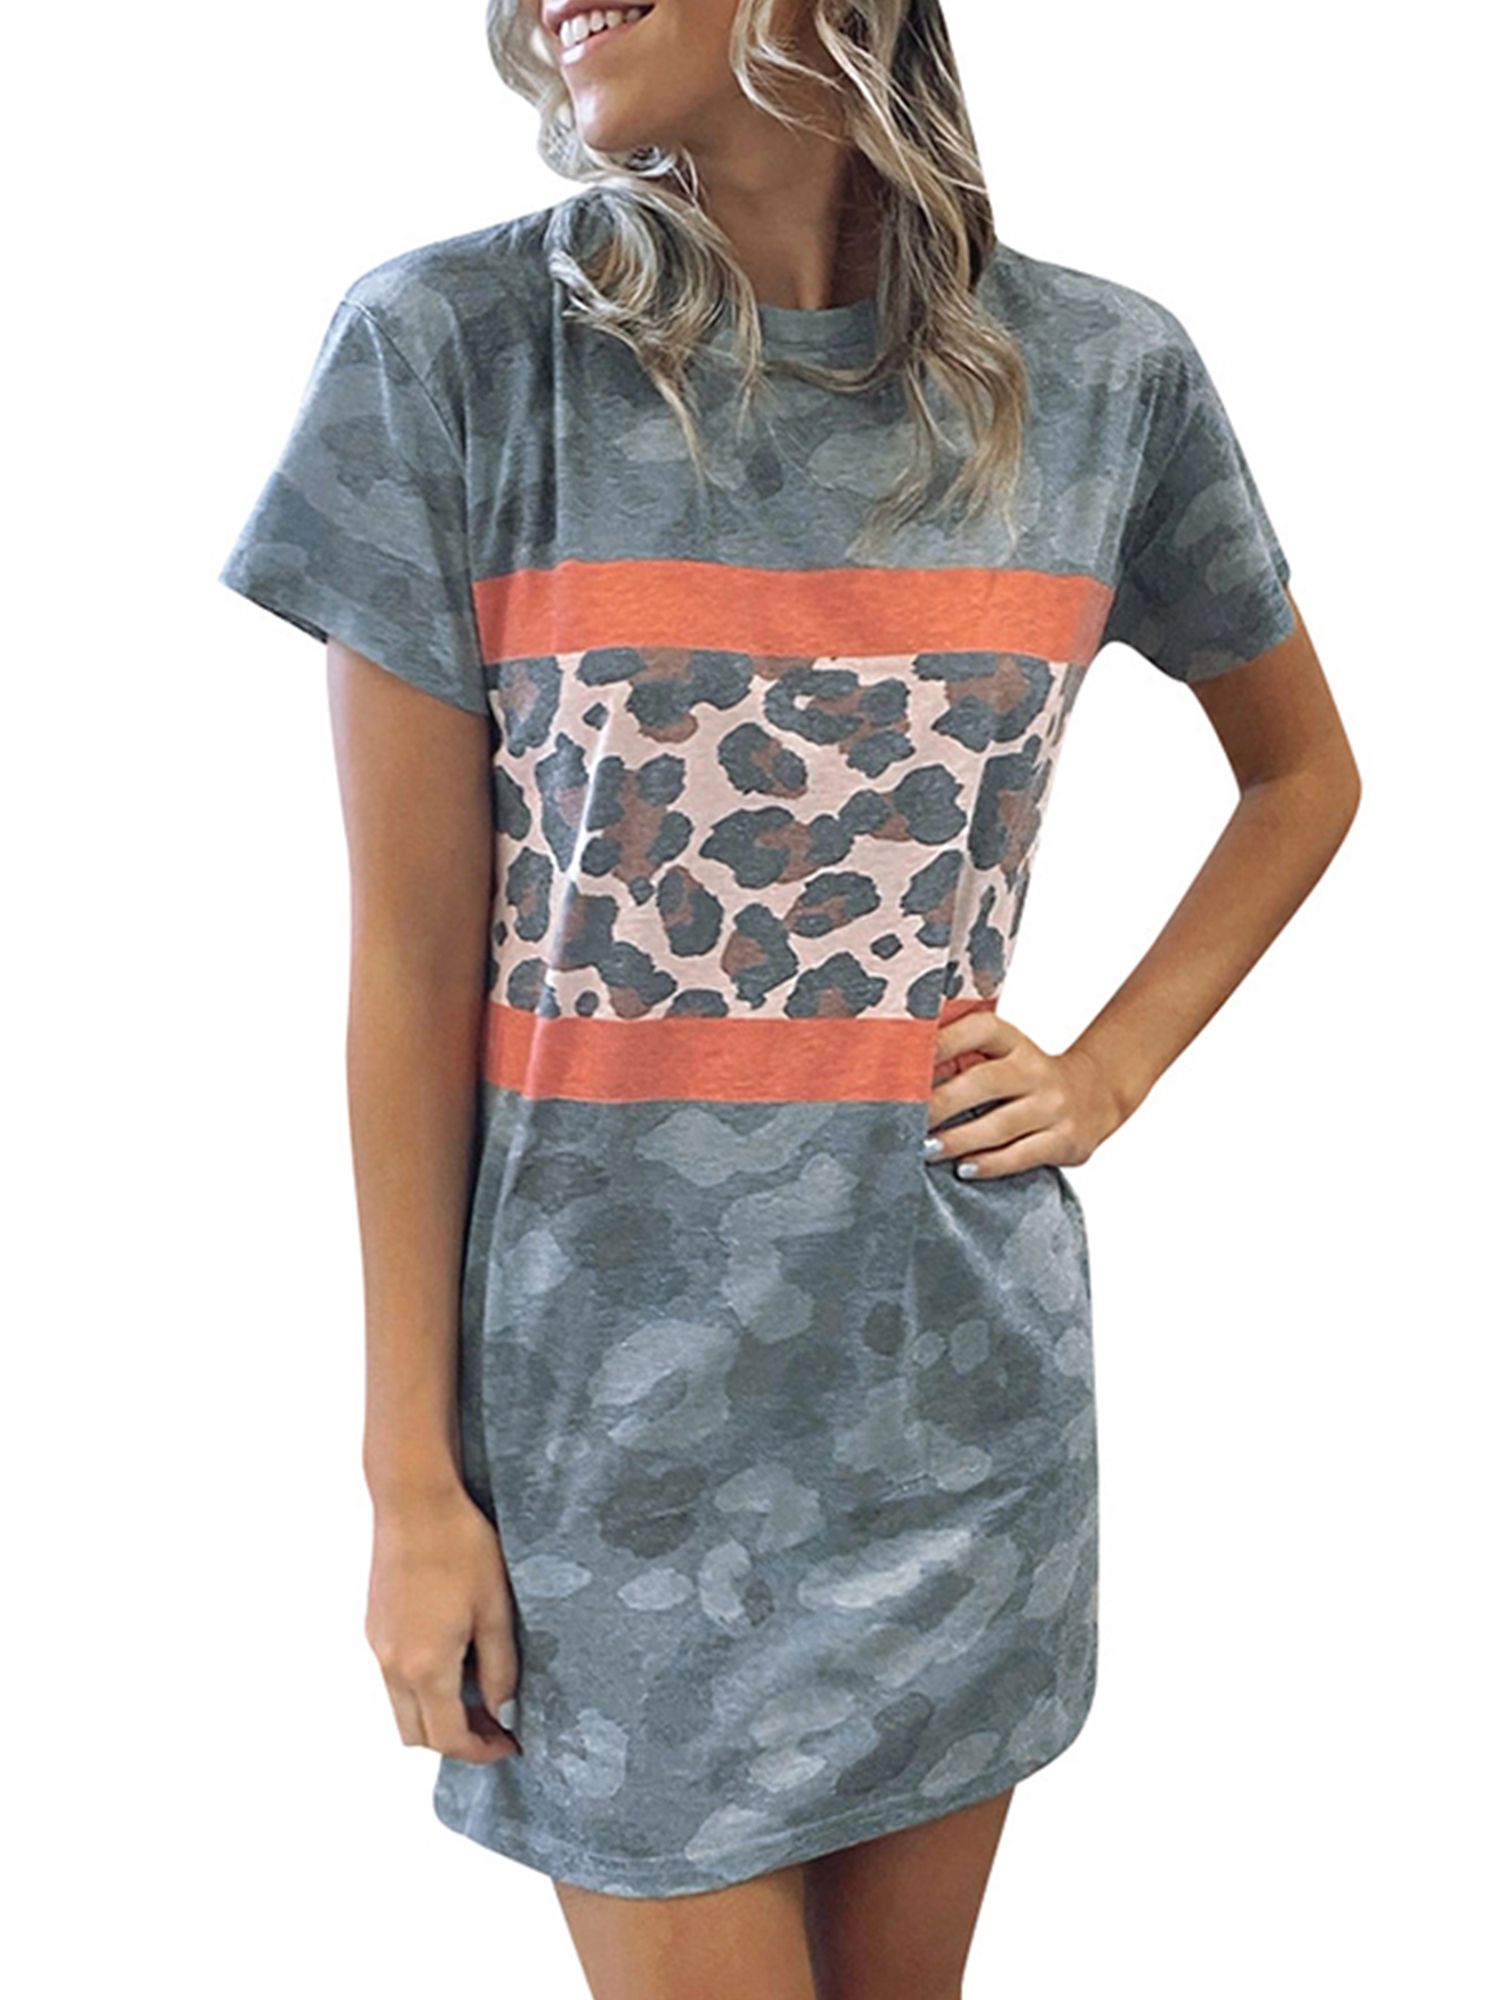 Women's Short Sleeve Tops Camo Leopard Mini Dress Shirts Summer Beach Sundress | Walmart (US)